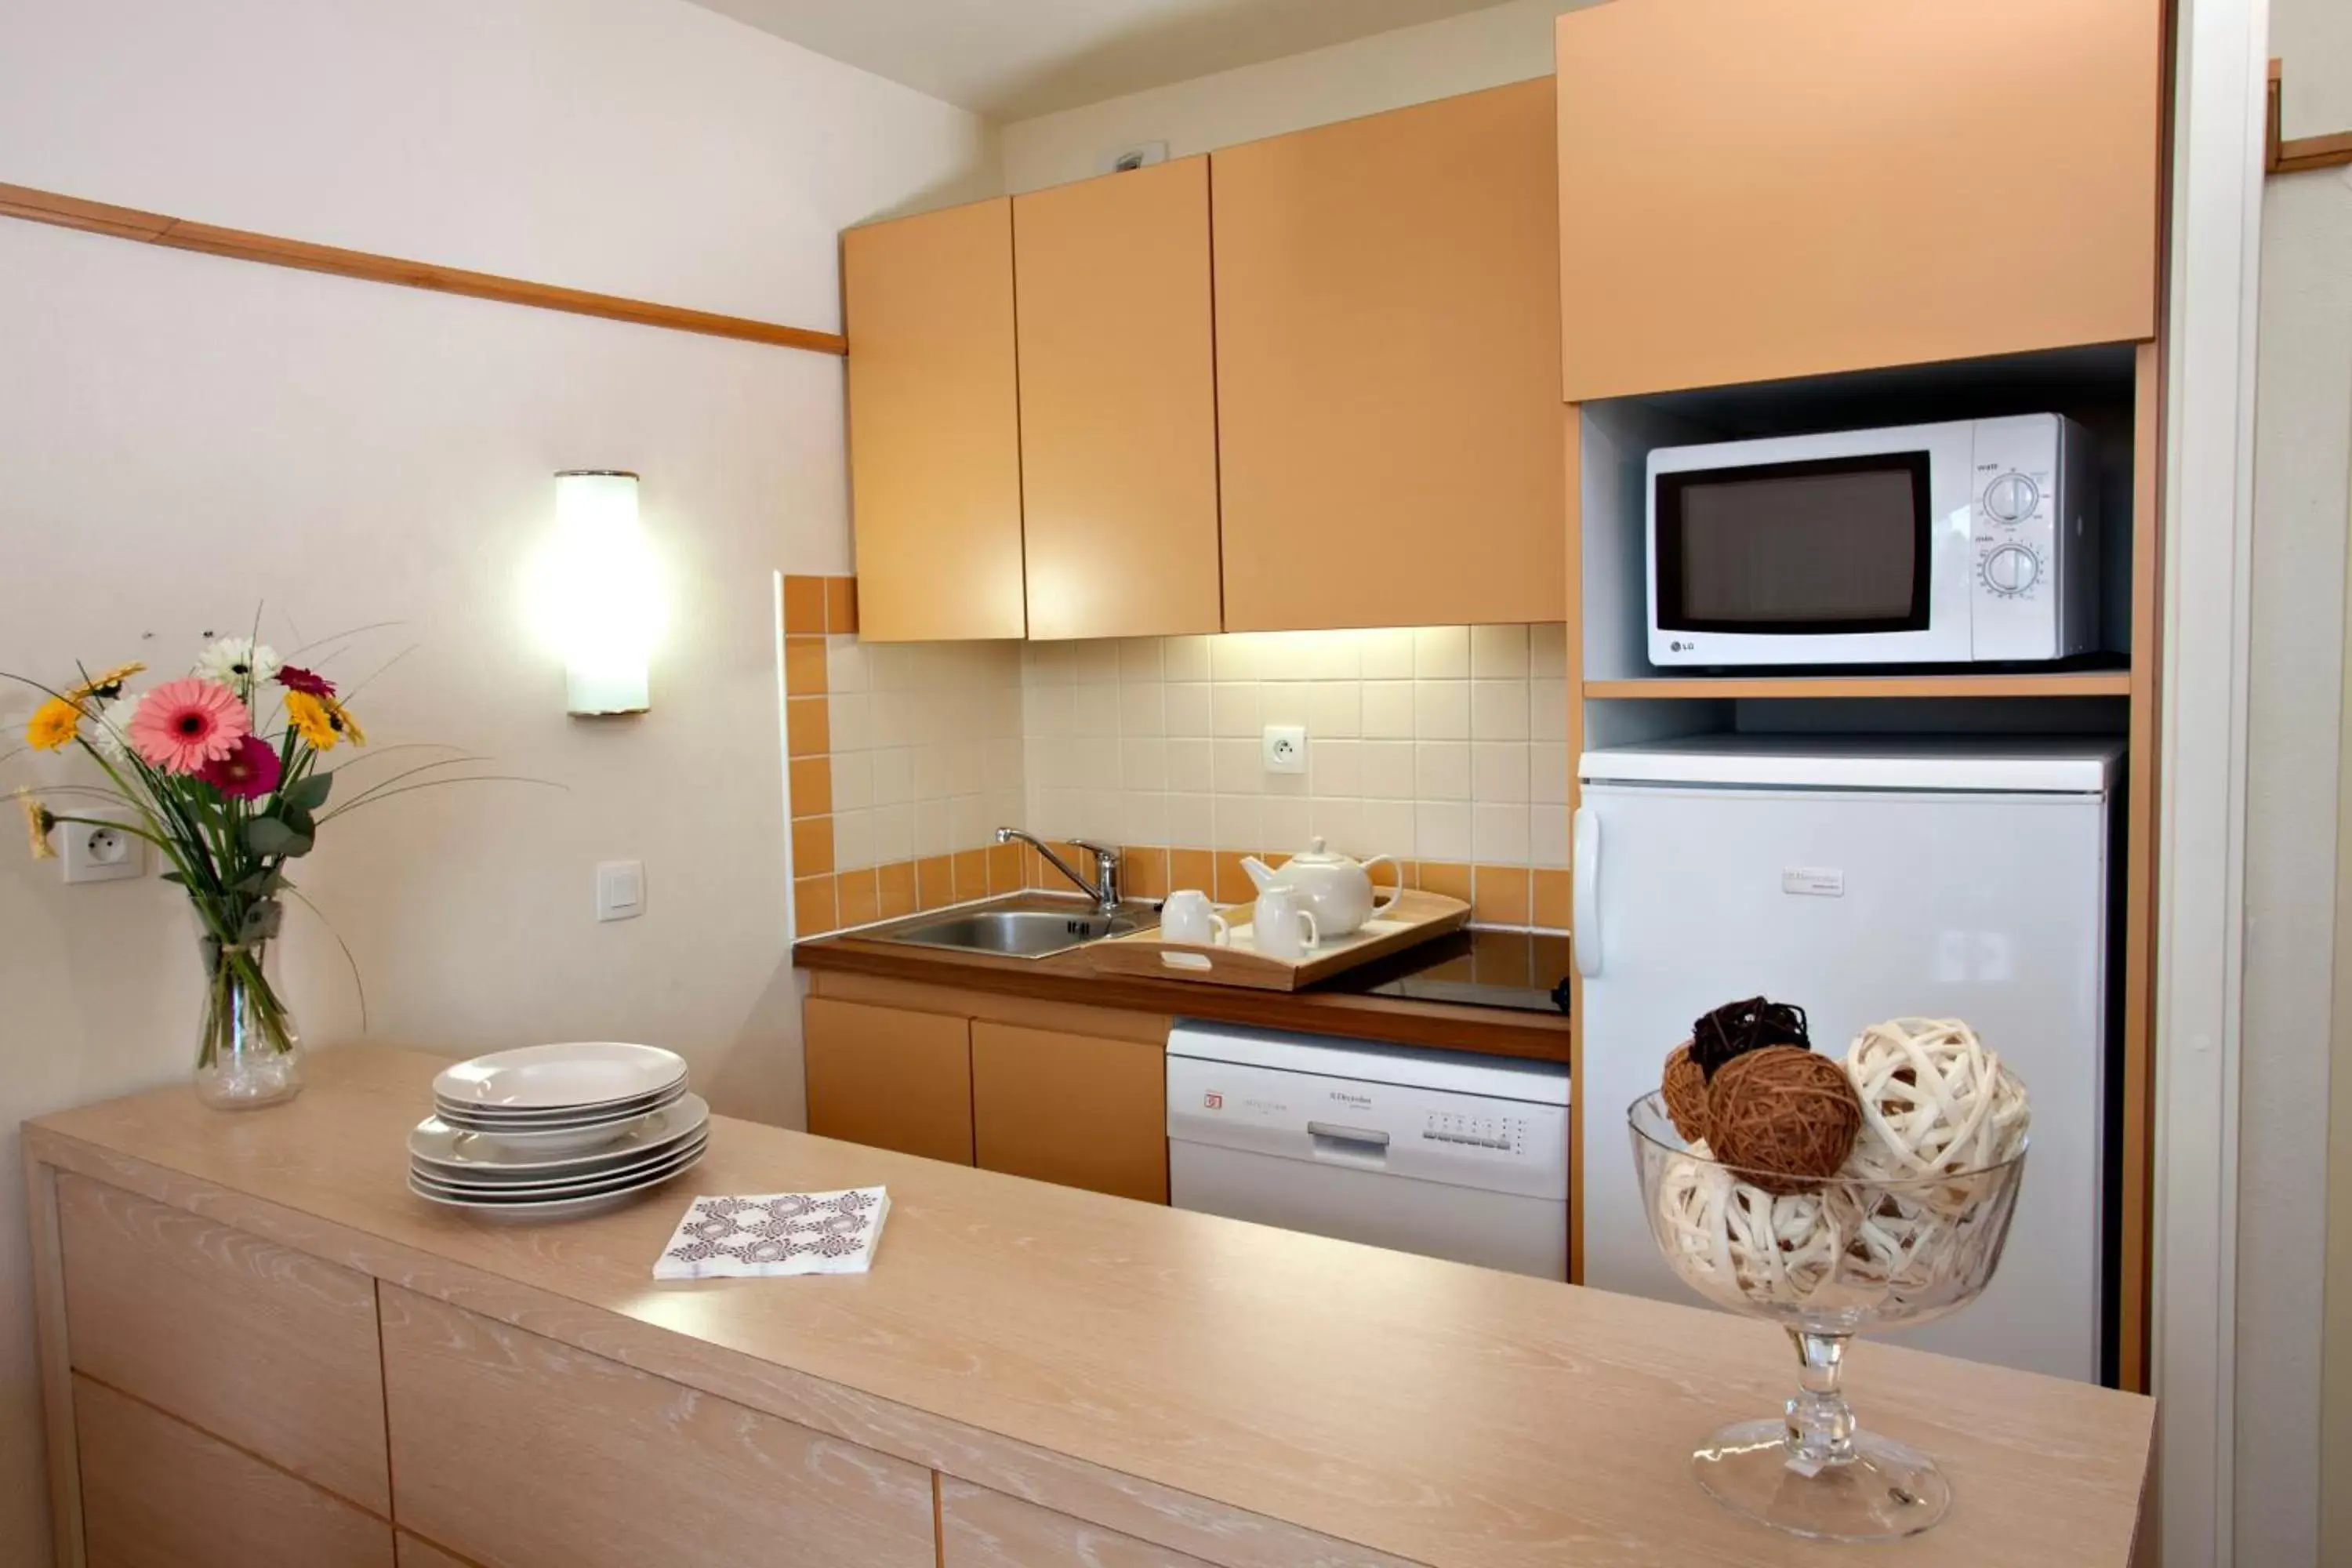 Kitchen or kitchenette, Kitchen/Kitchenette in Pierre & Vacances Le Moulin des Cordeliers